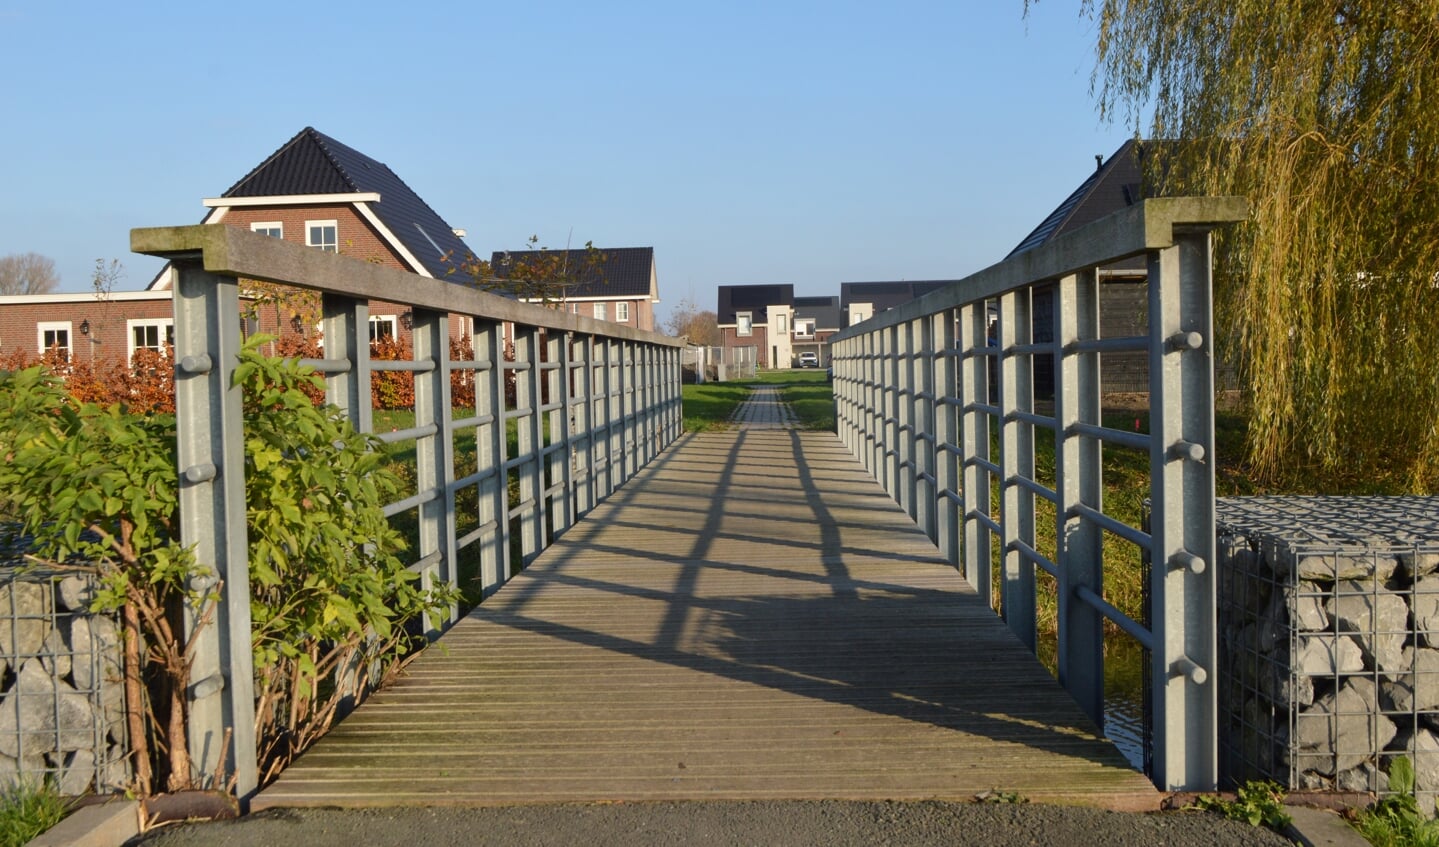 De Graafschap in Biddinghuizen is een van de plekken waar het college de bouwproductie wil versnellen.